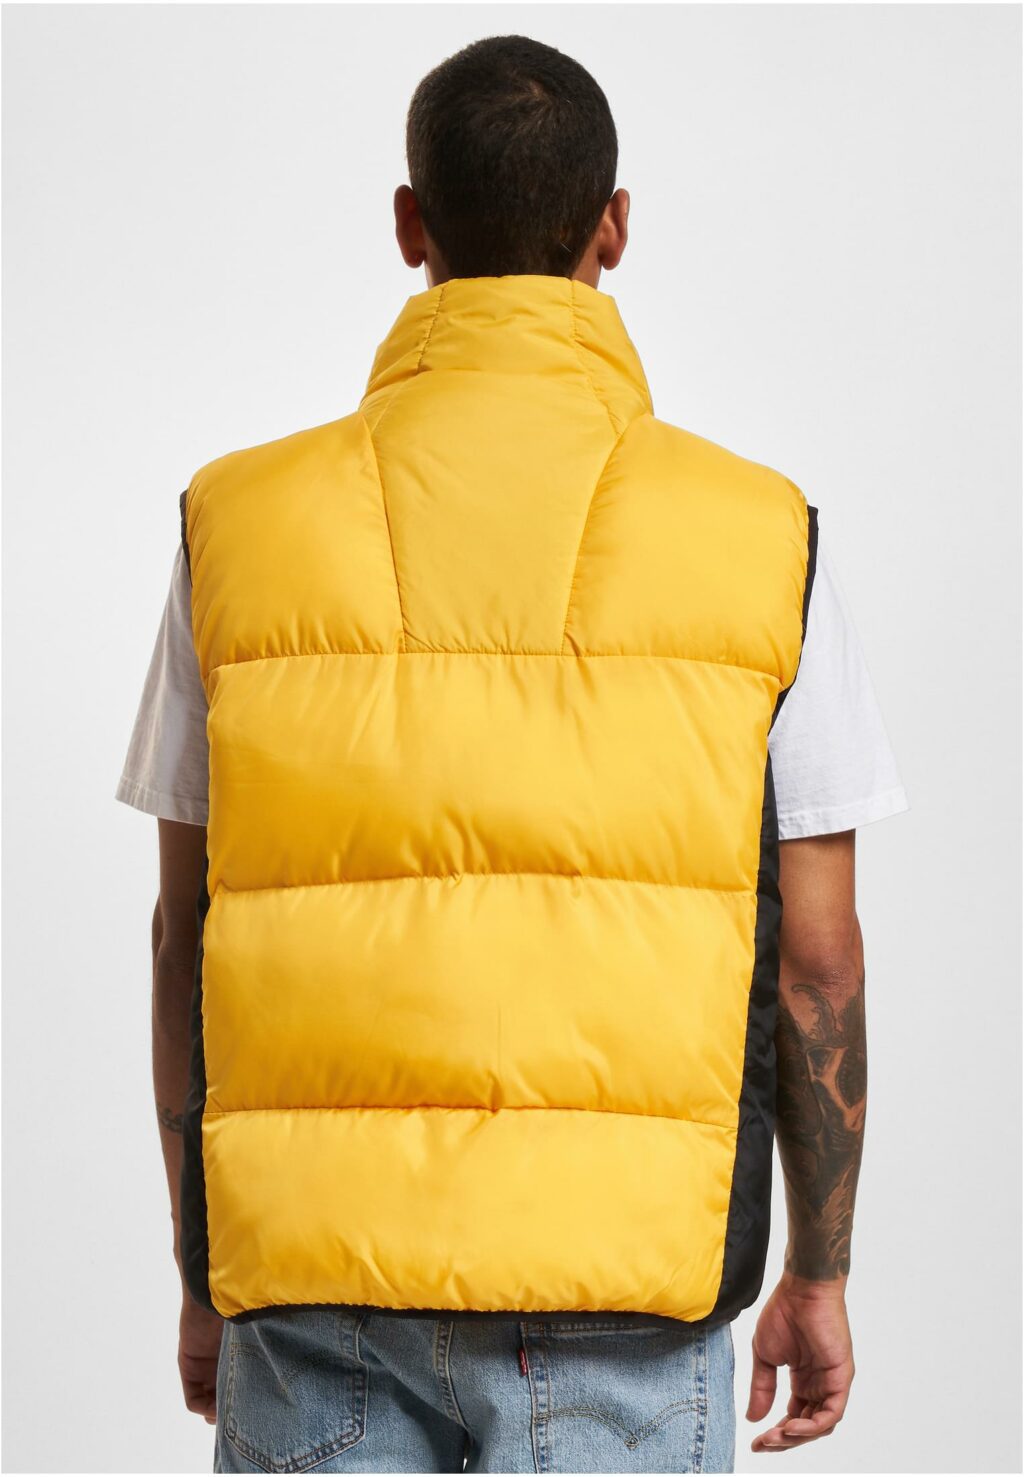 PM234-006-3 SP Bubble Vest 1.0 yellow/black 6072273